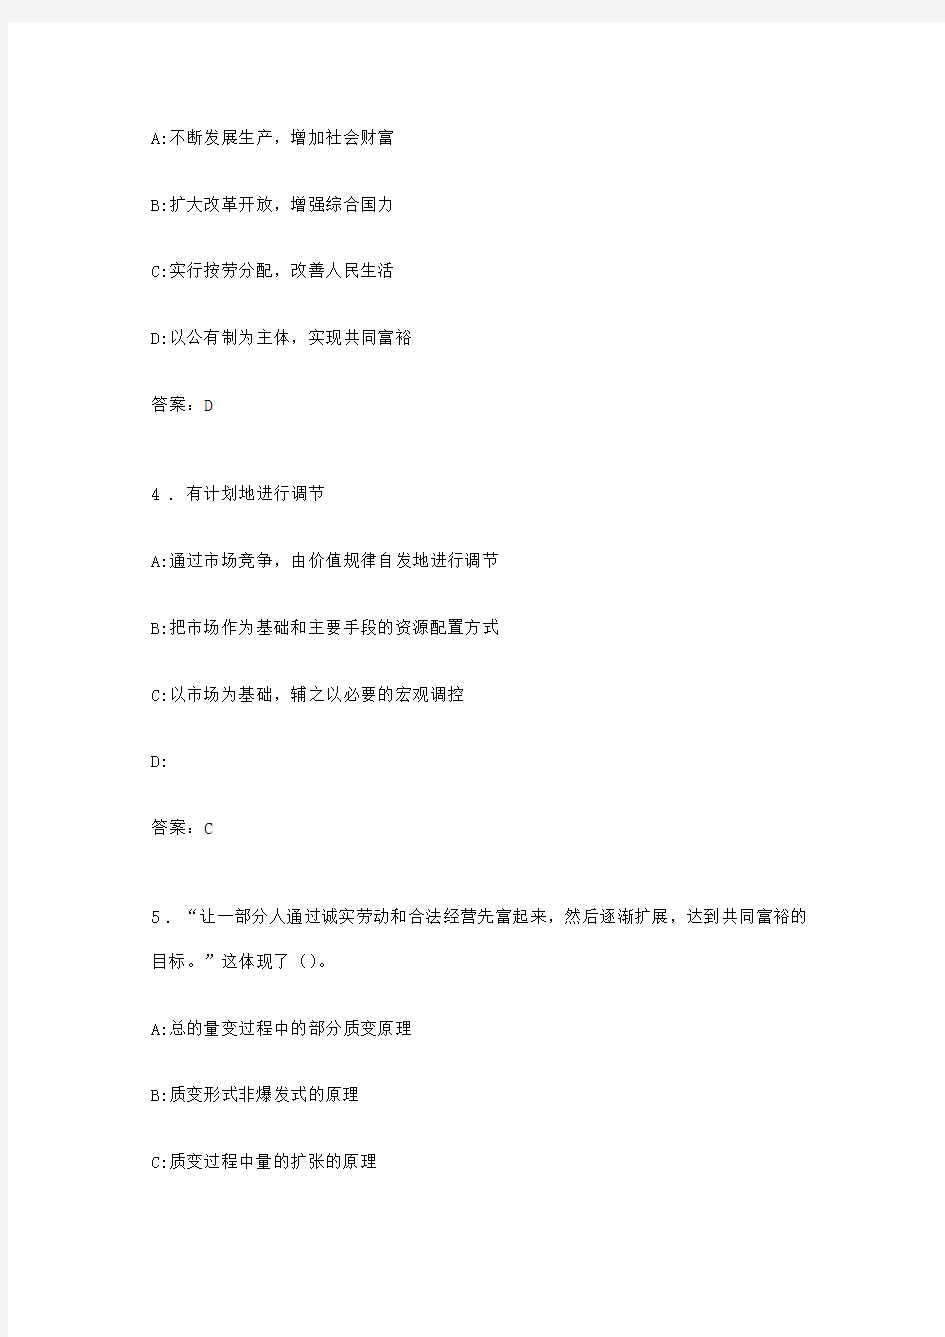 枞阳县2013年事业单位招聘考试笔试真题及答案解析